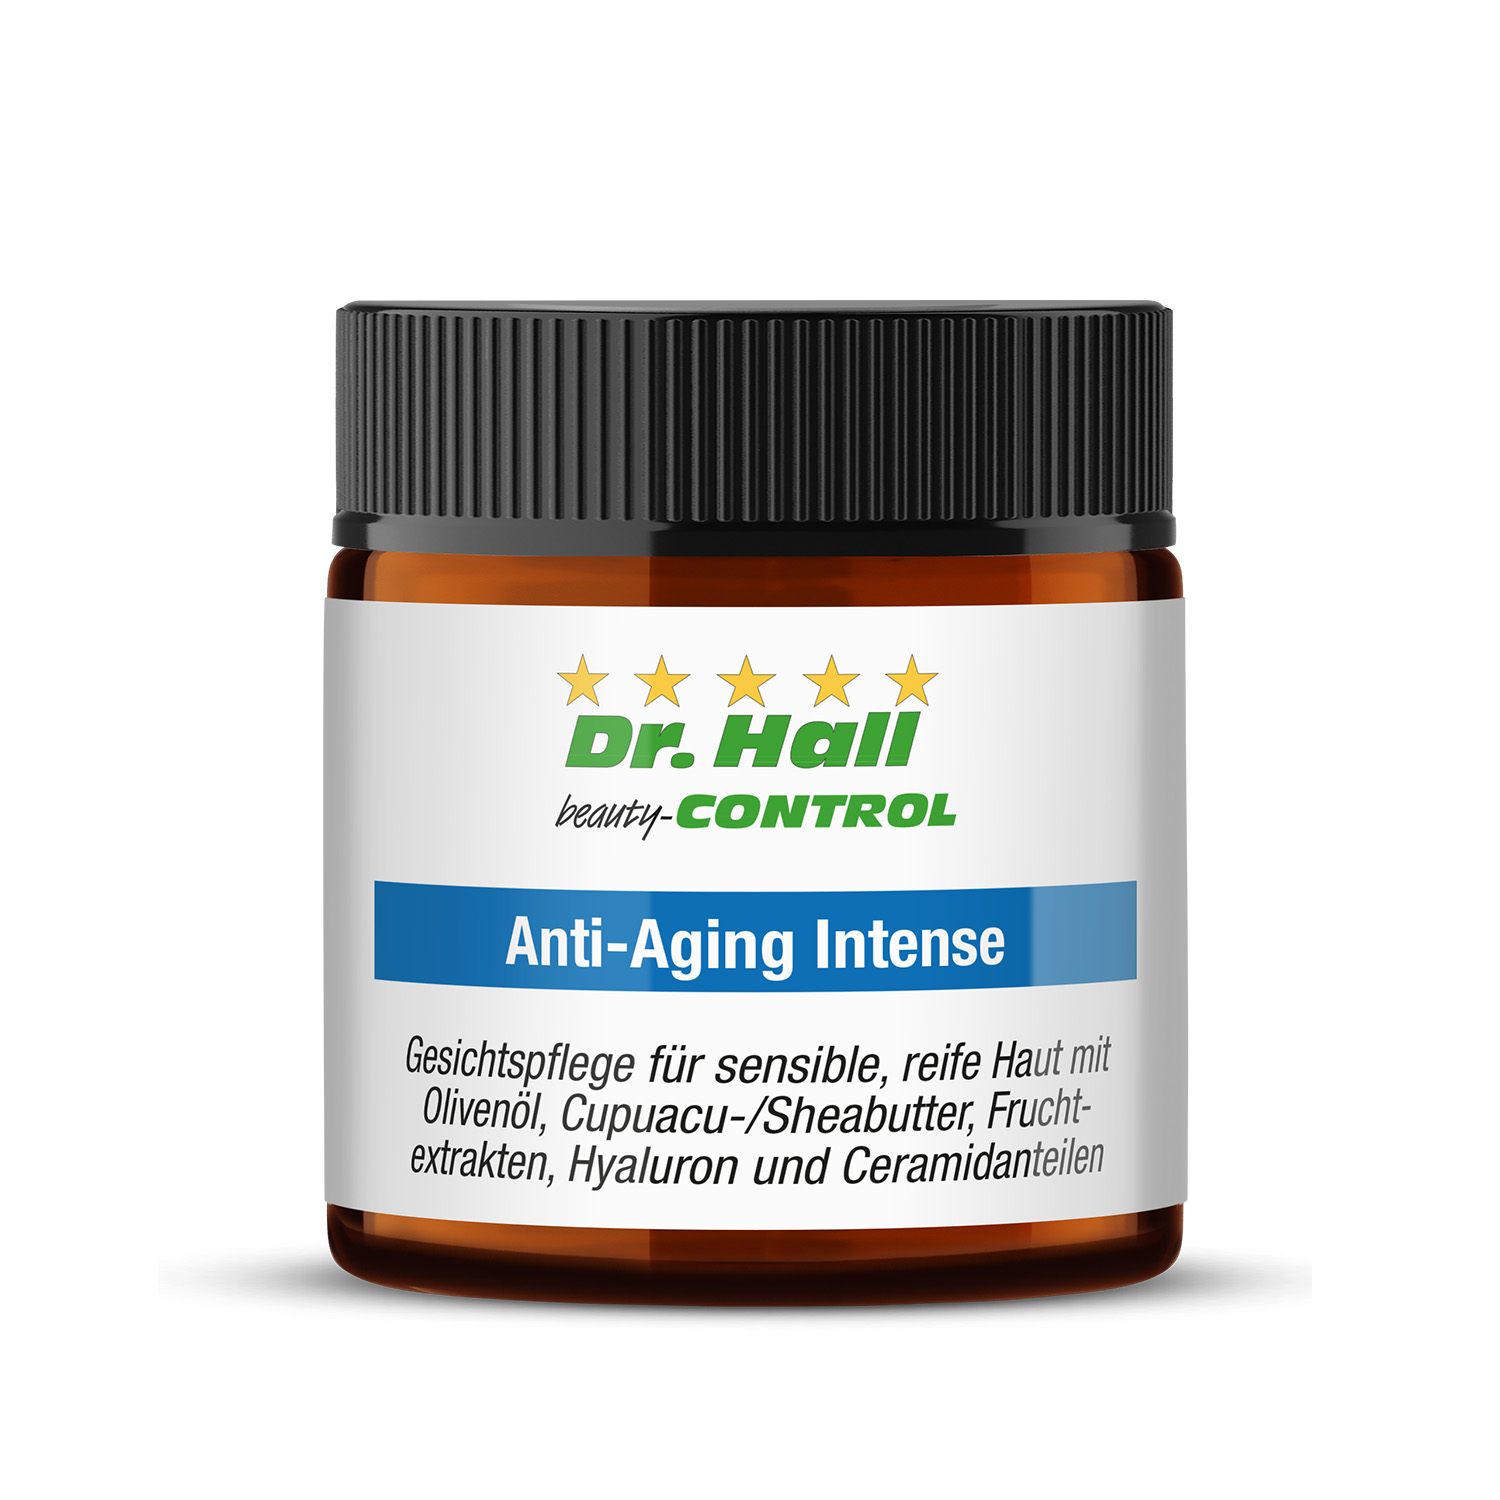 Anti-Aging Intense, 30 ml